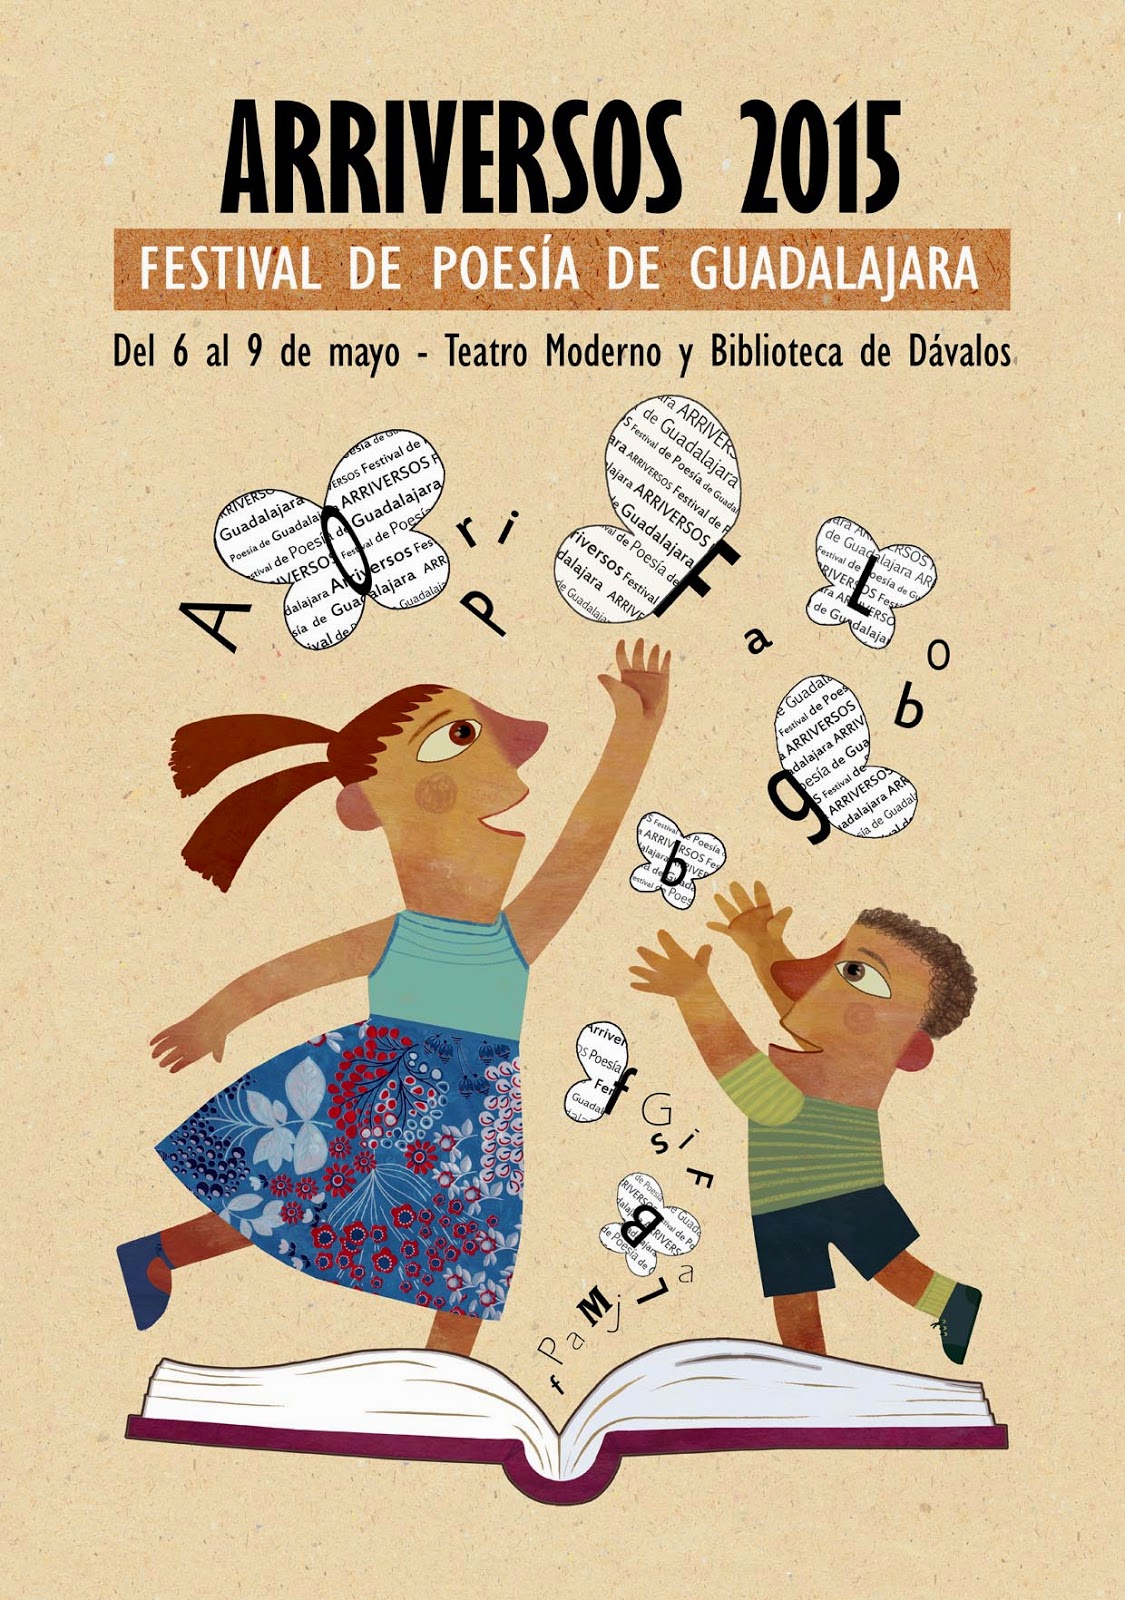 Arriversos, festival de poesía, Guadalajara, Susana Rosique, cartel, ilustración